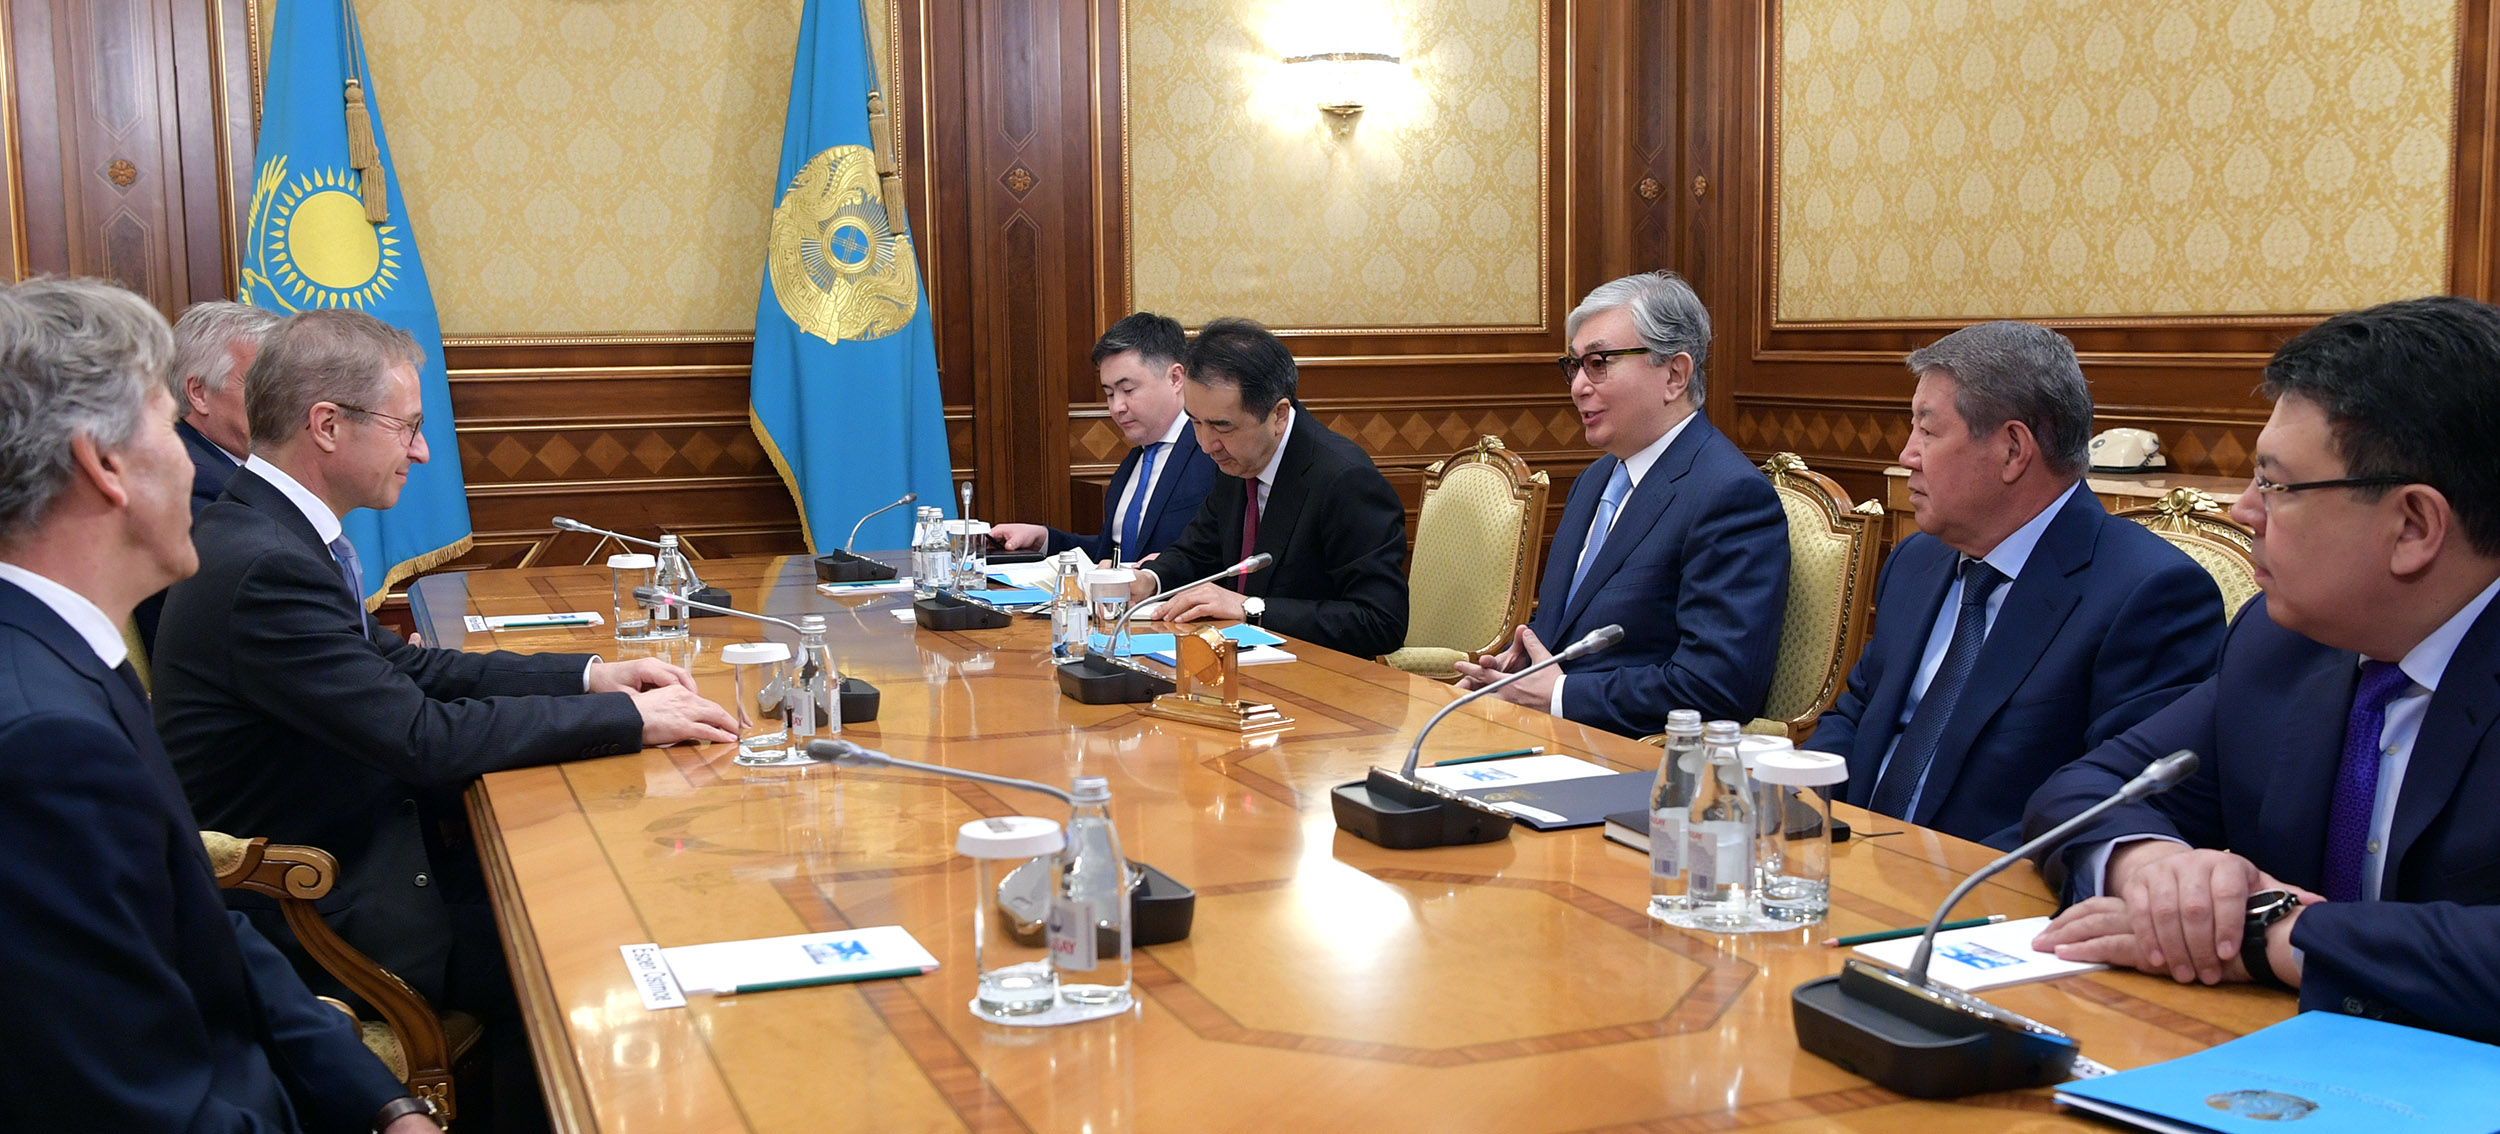 Касым-Жомарт Токаев обсудил с главой Borealis проекты компании в Казахстане  